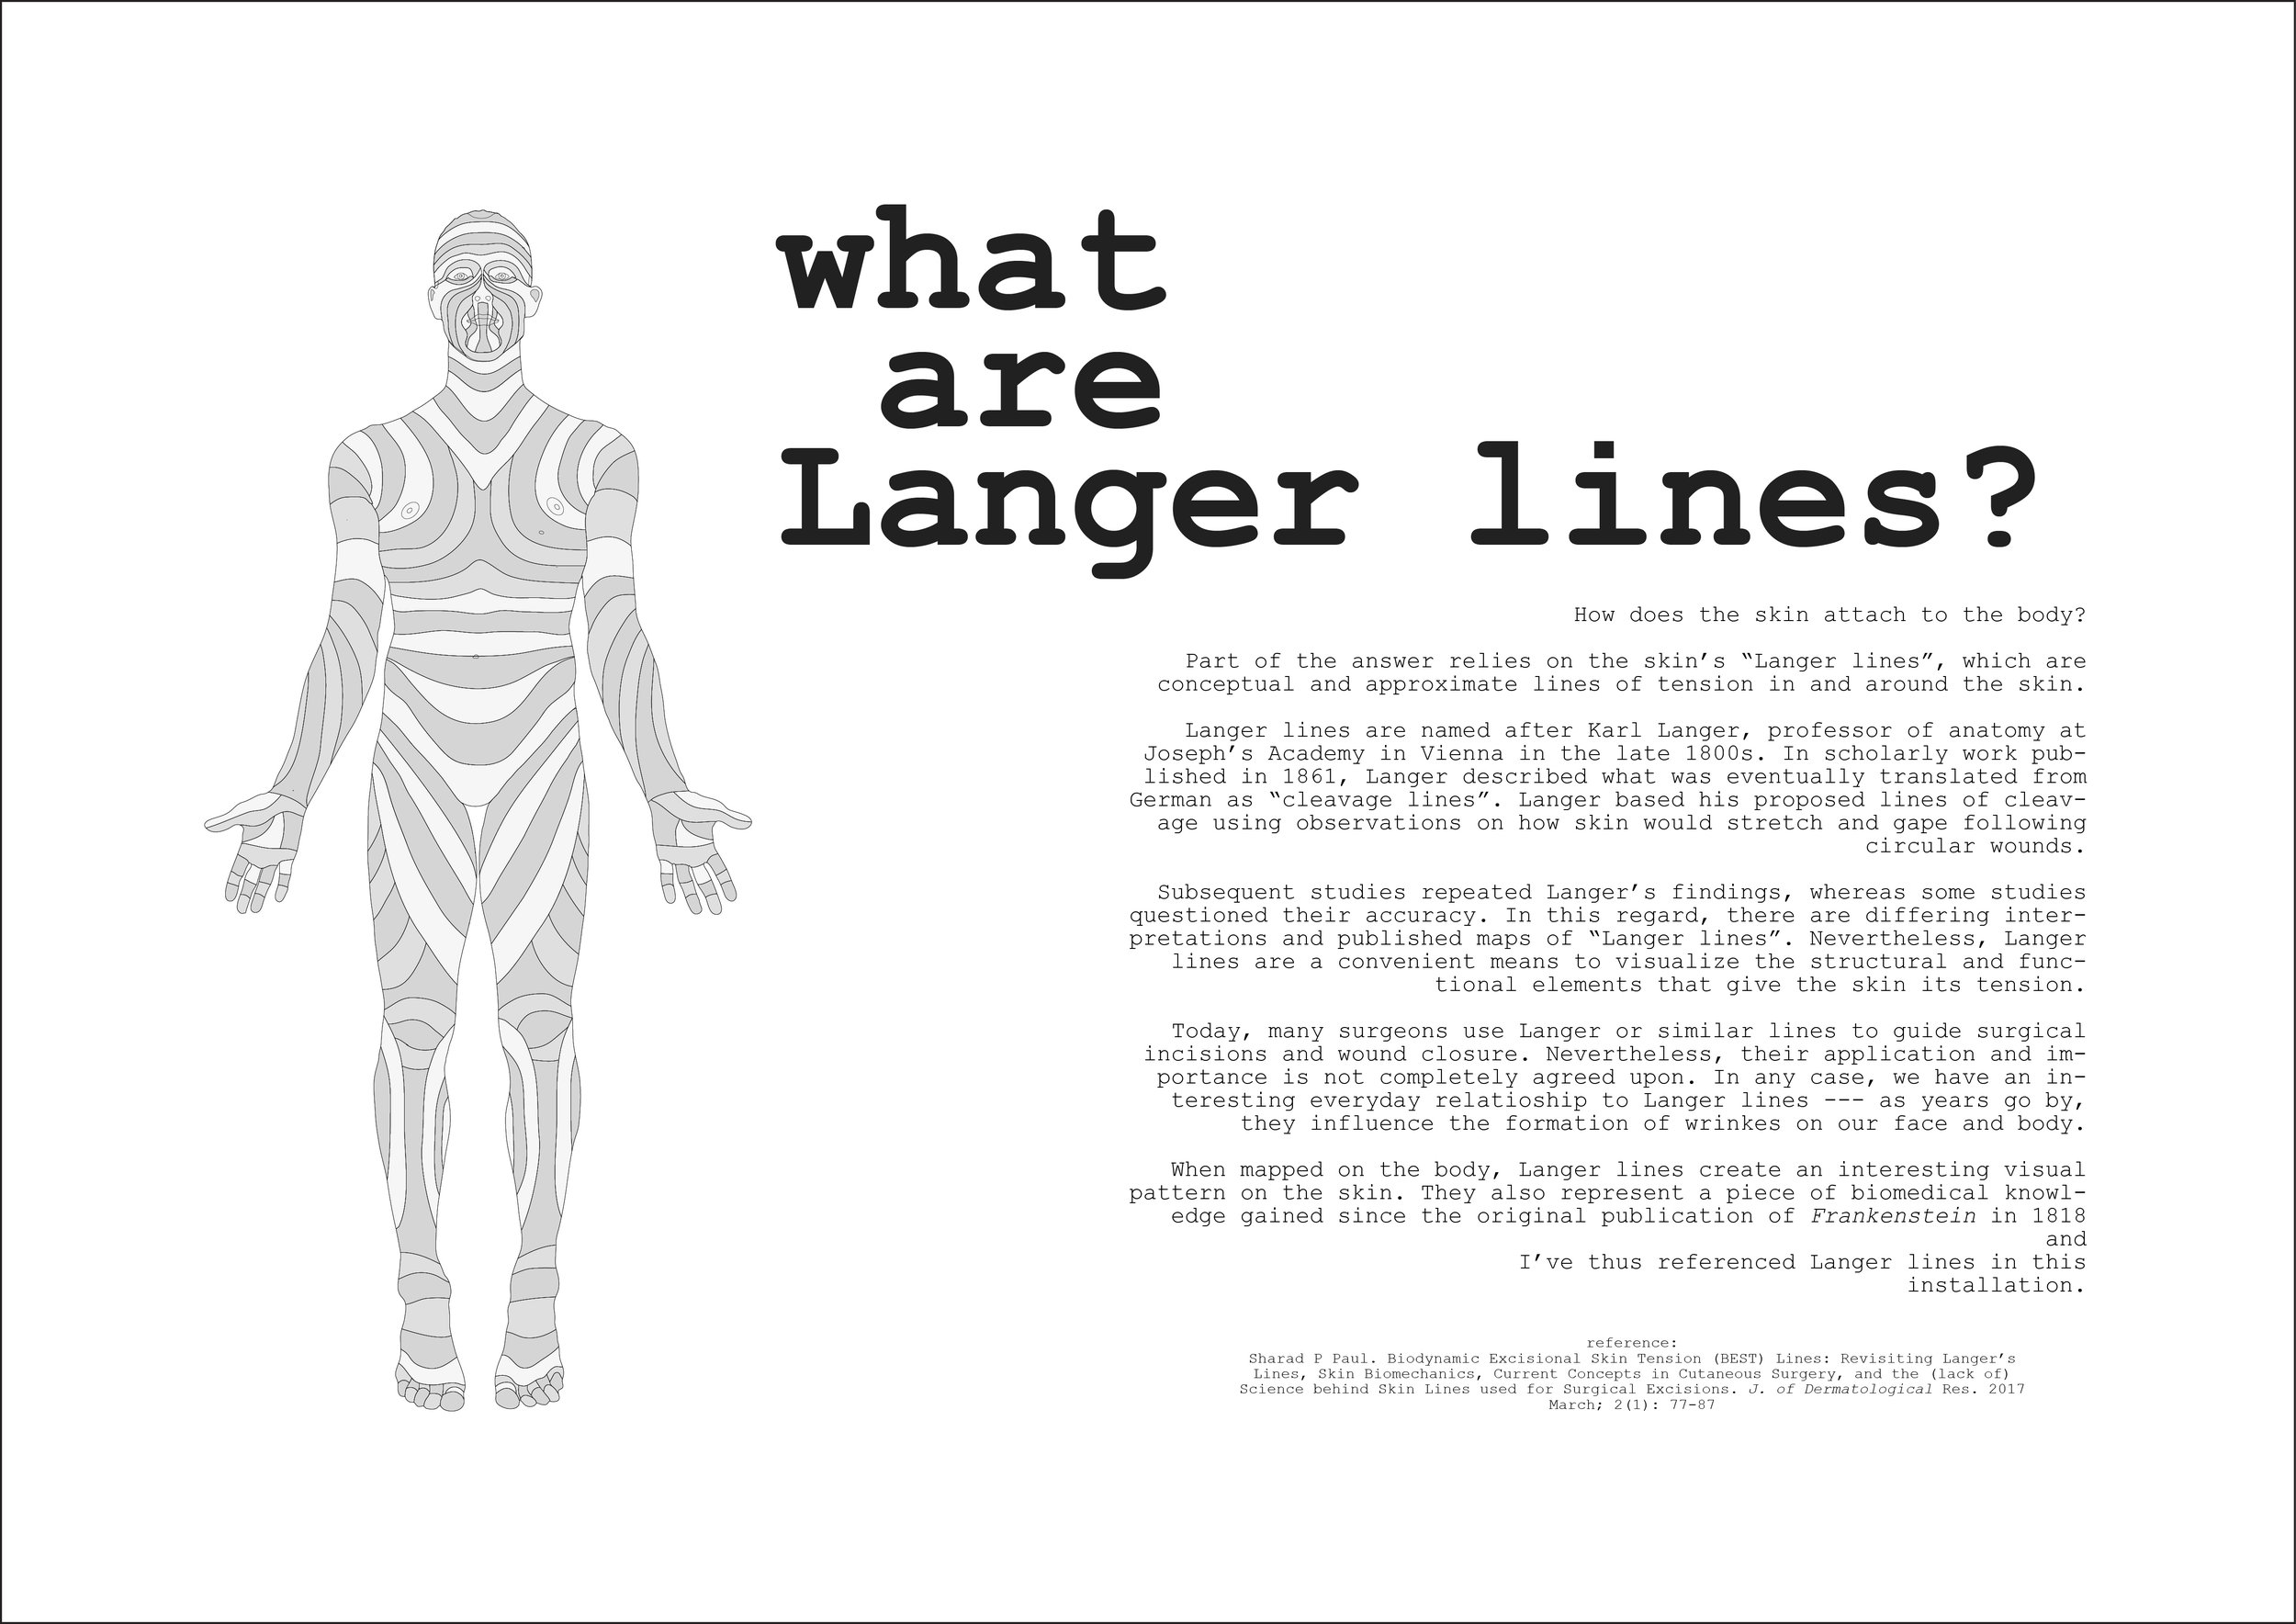 Langer lines